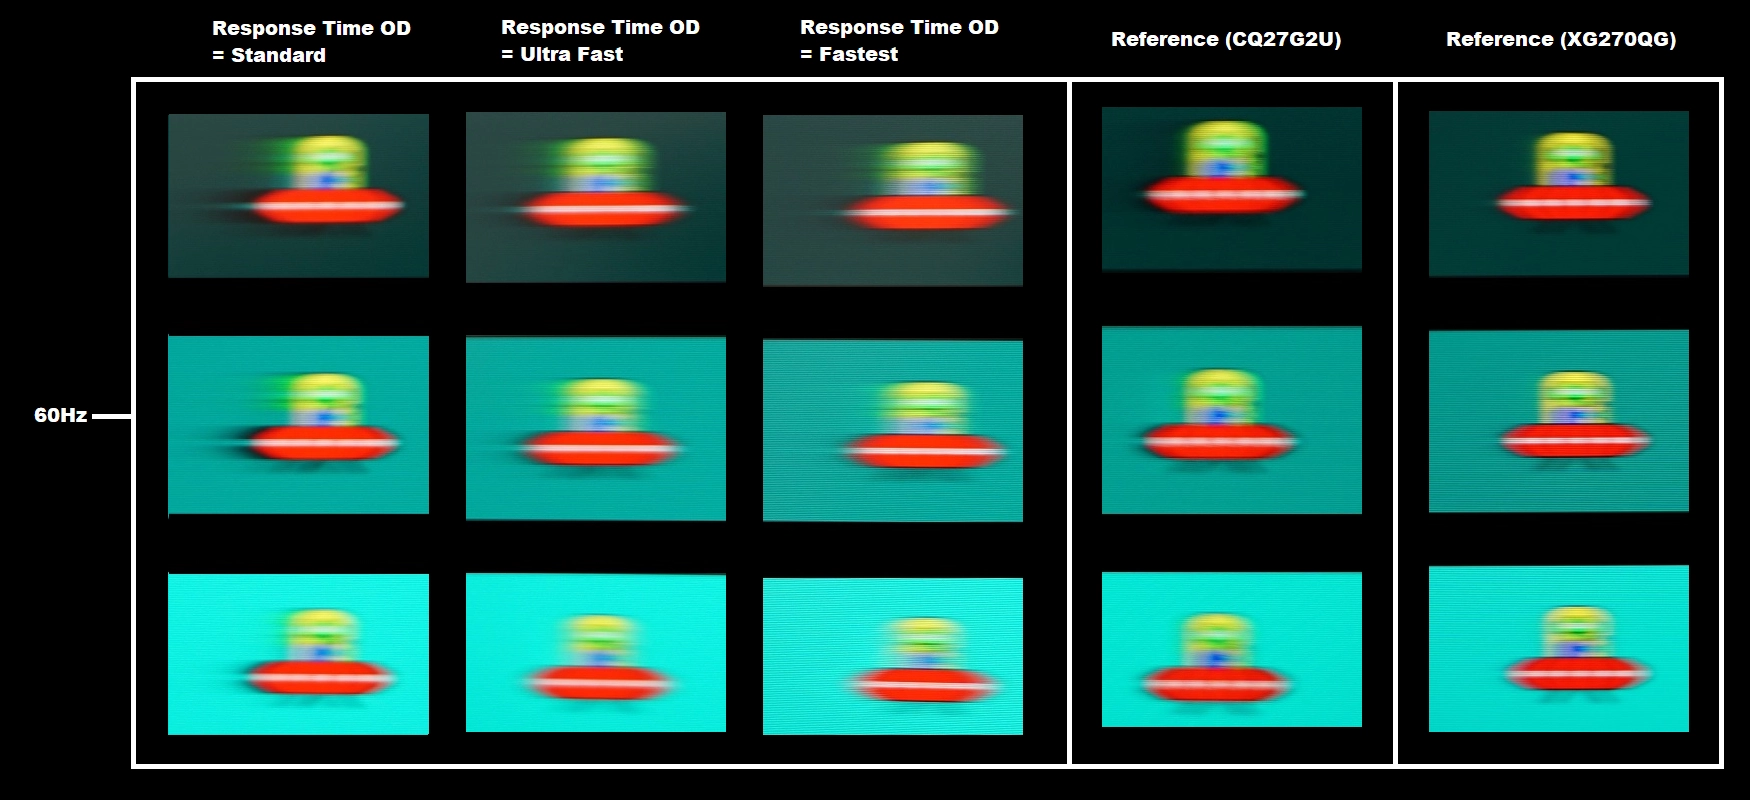 Perceived blur, 60Hz